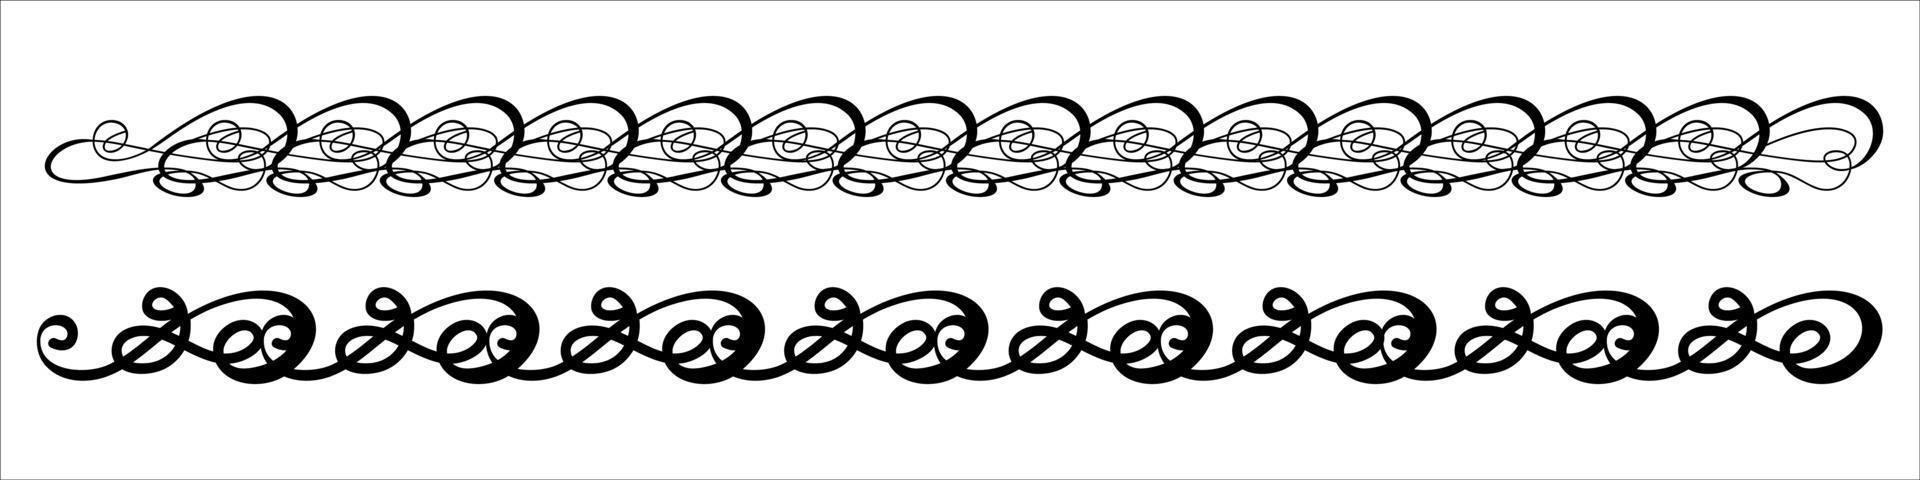 calligraphic borders vector eps 10